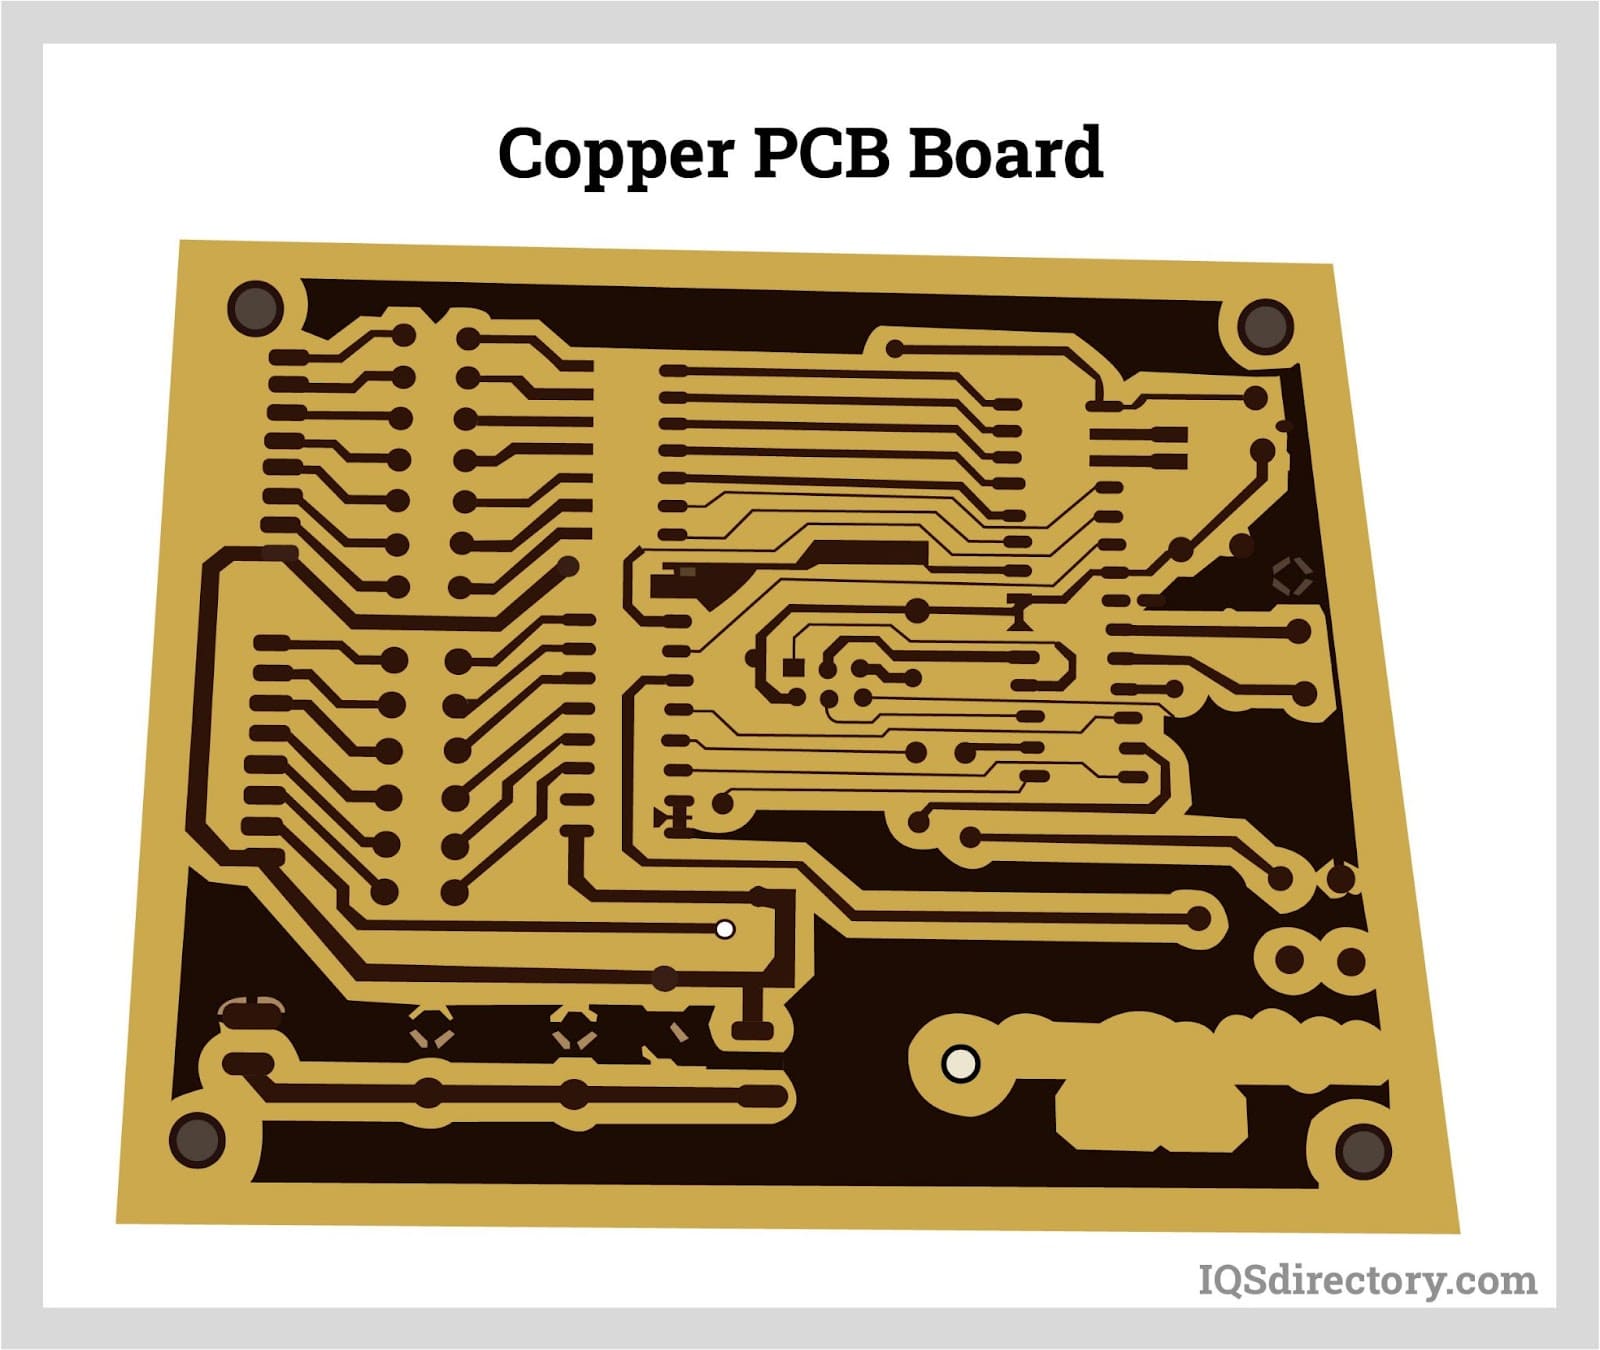 Copper PCB Board